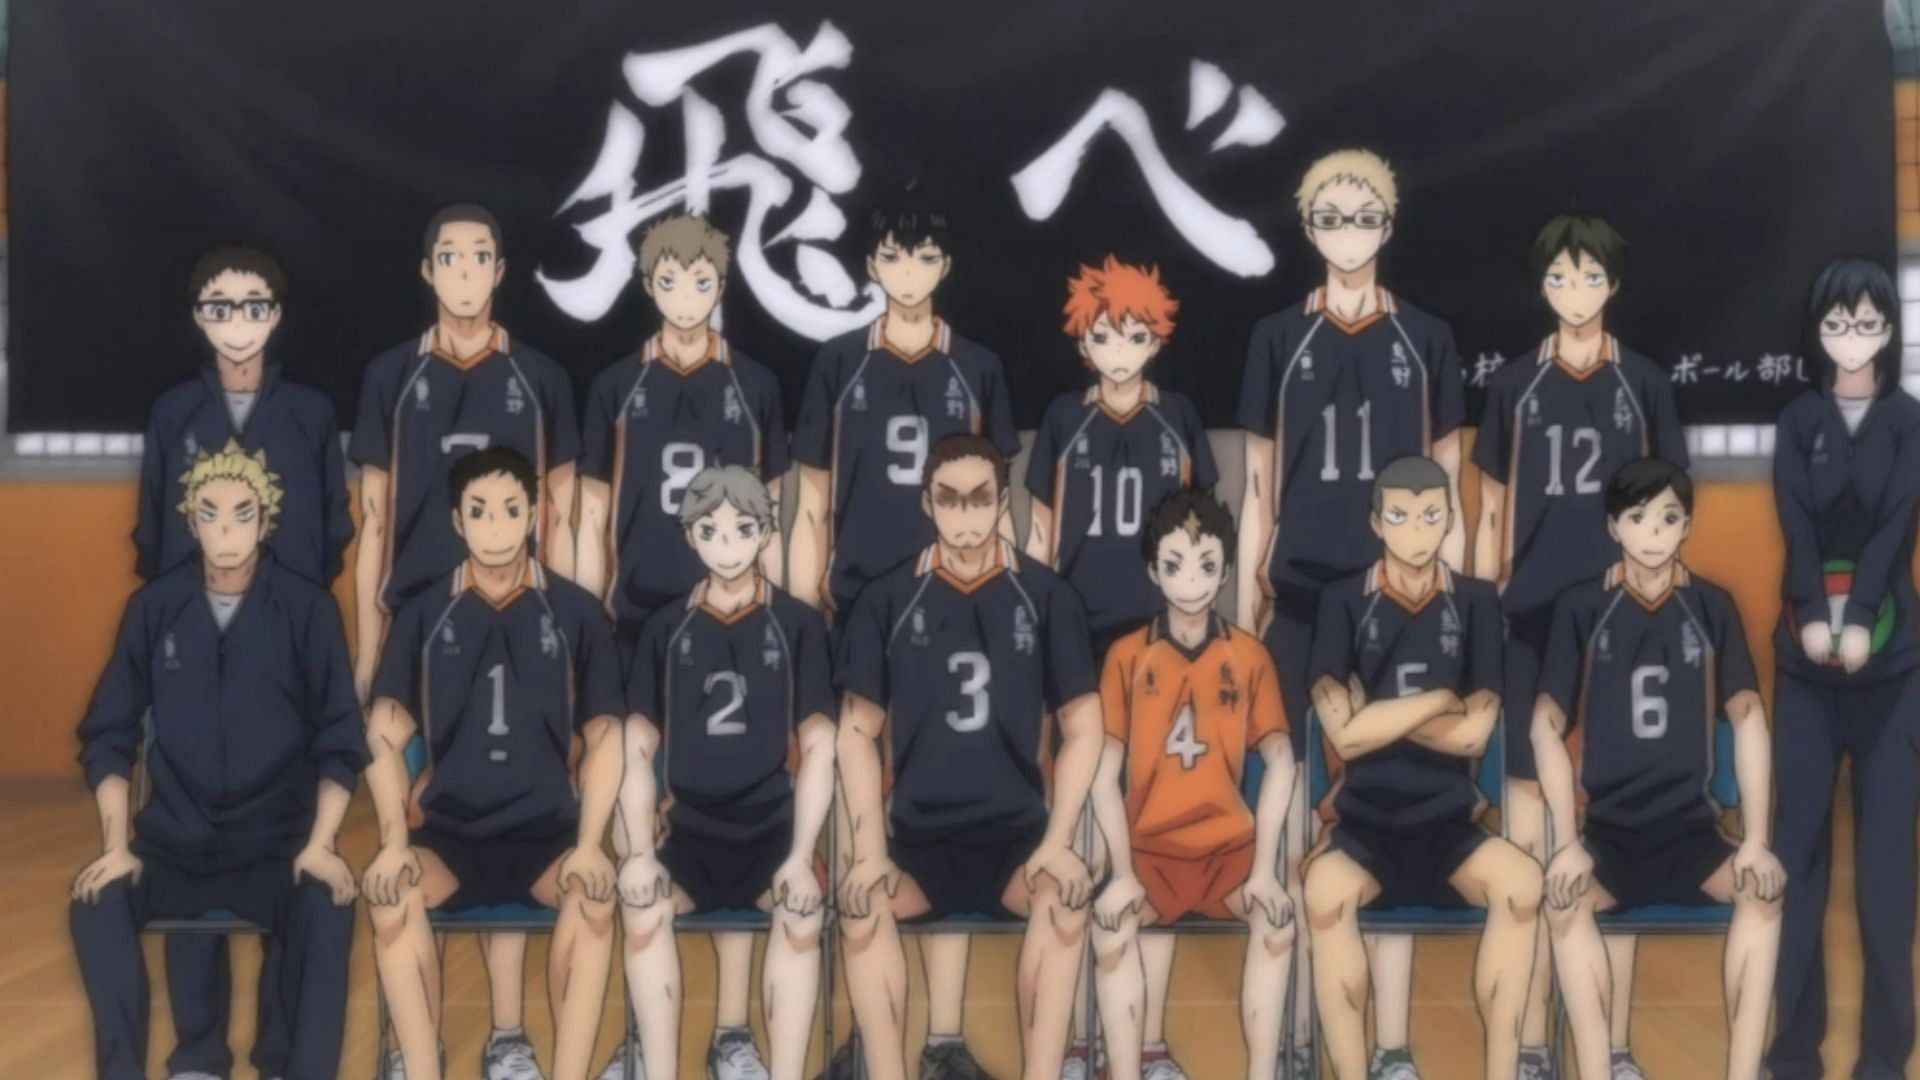 Top 8 Haikyuu high school volleyball teams